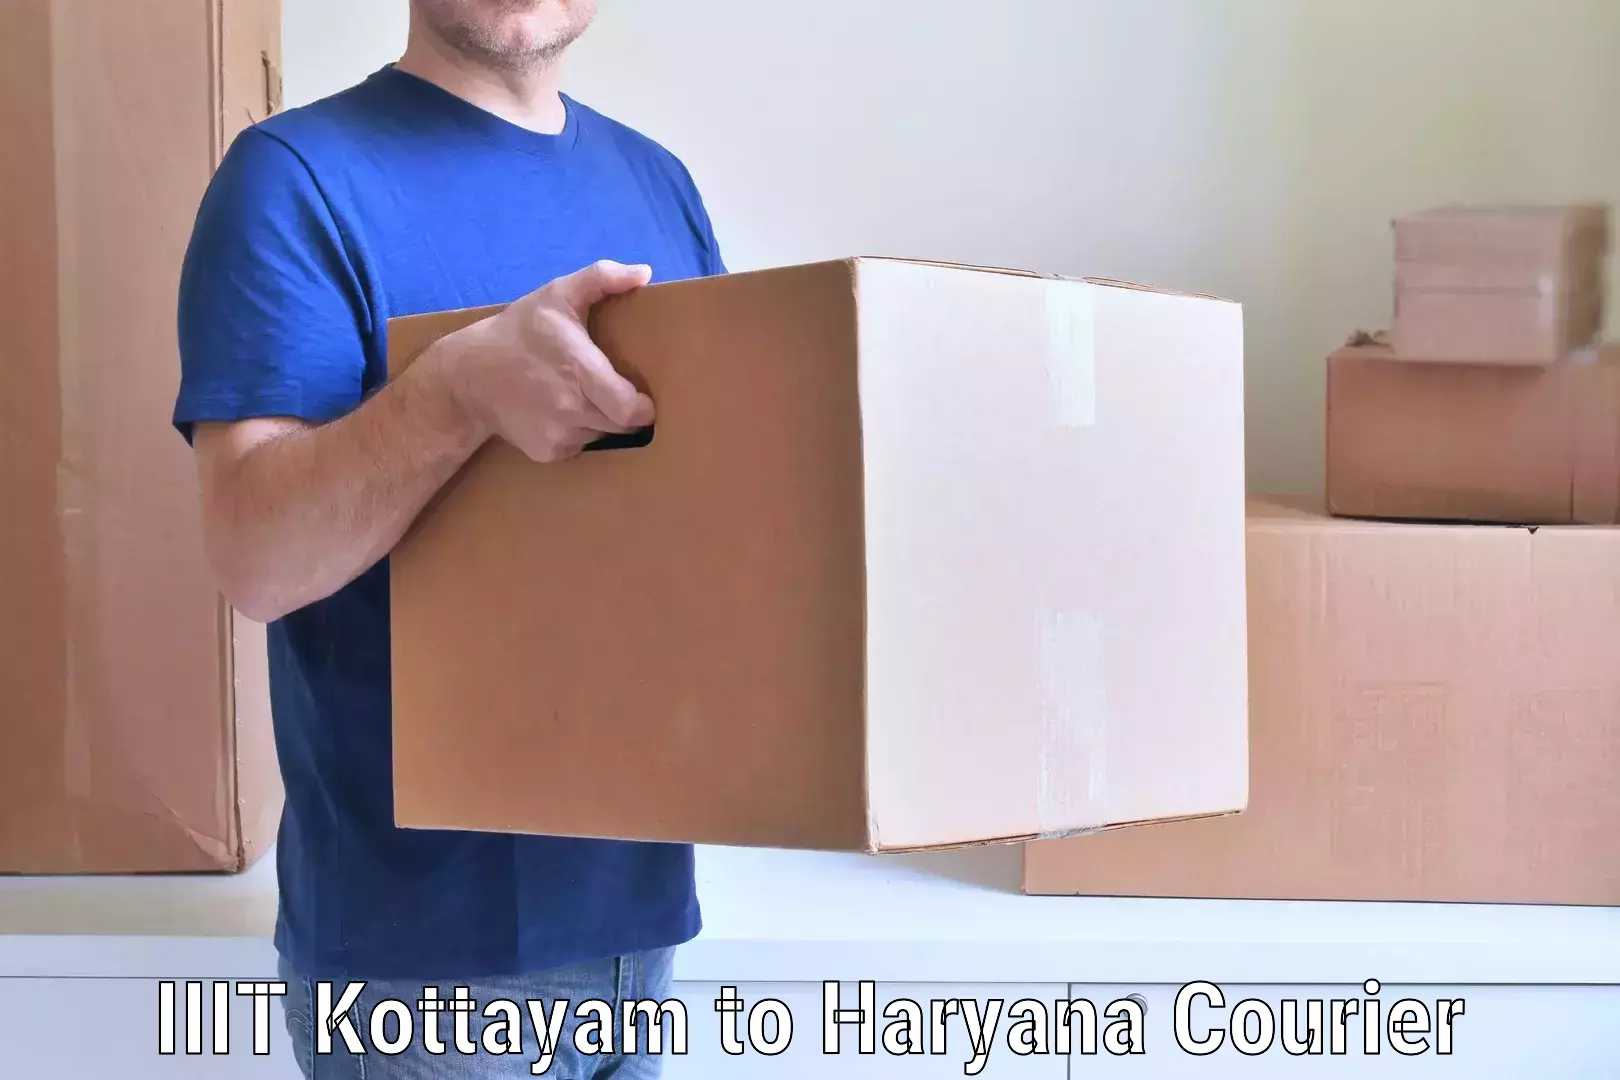 Moving and handling services IIIT Kottayam to Budha Khera